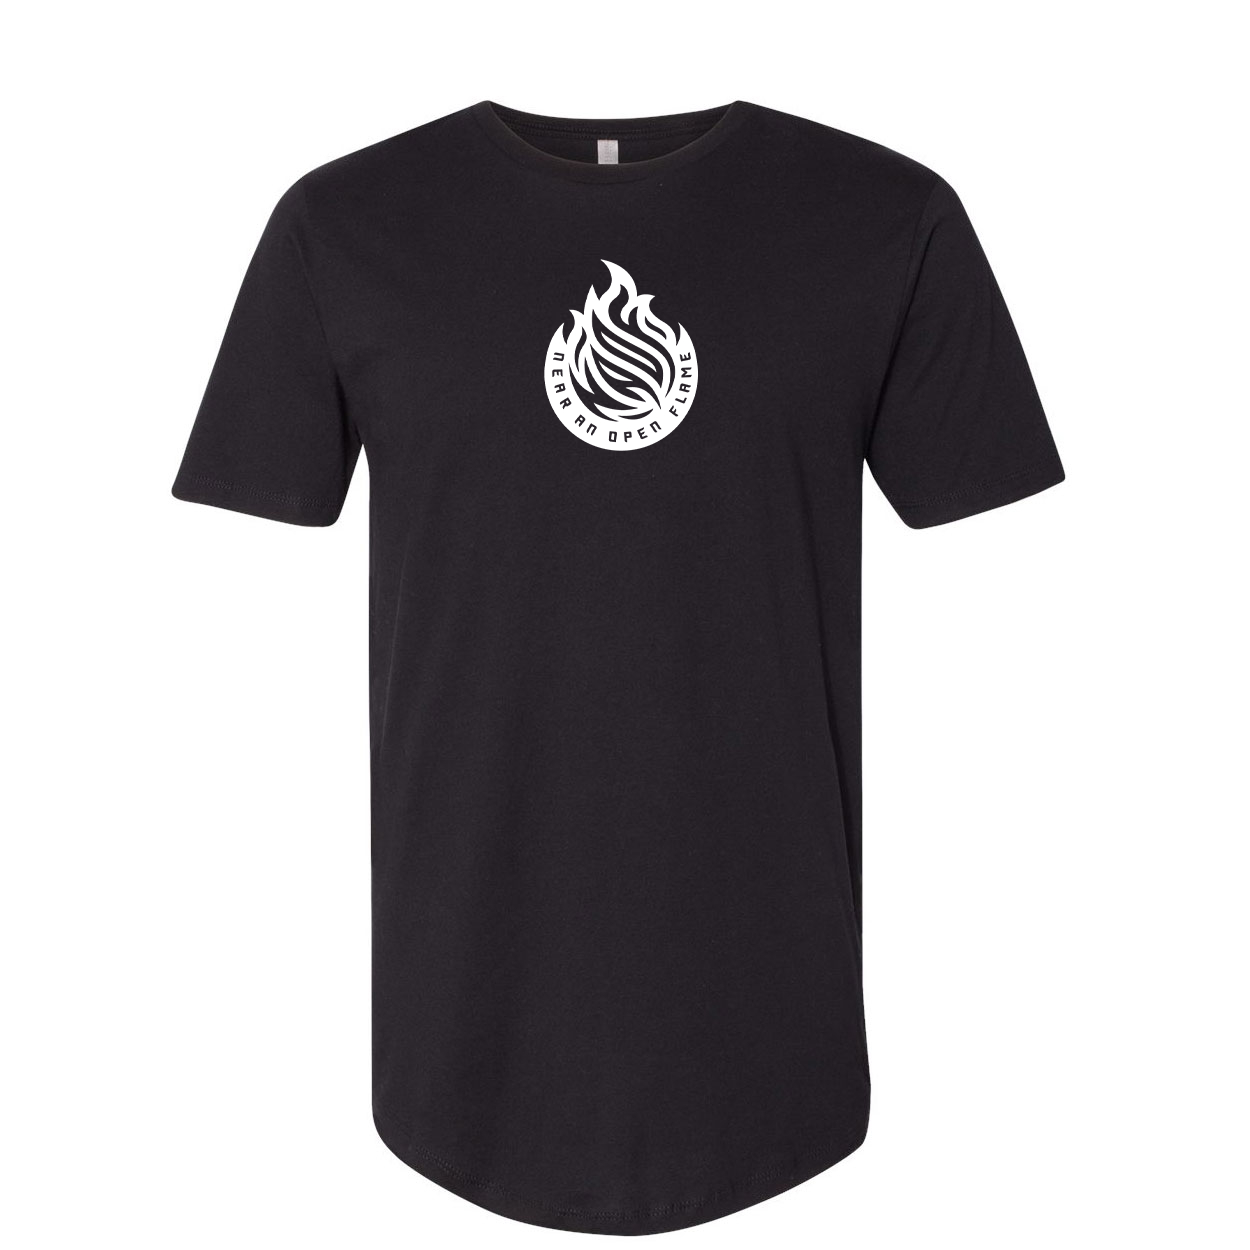 Near An Open Flame Classic Premium Tall T-Shirt Black (White Logo)